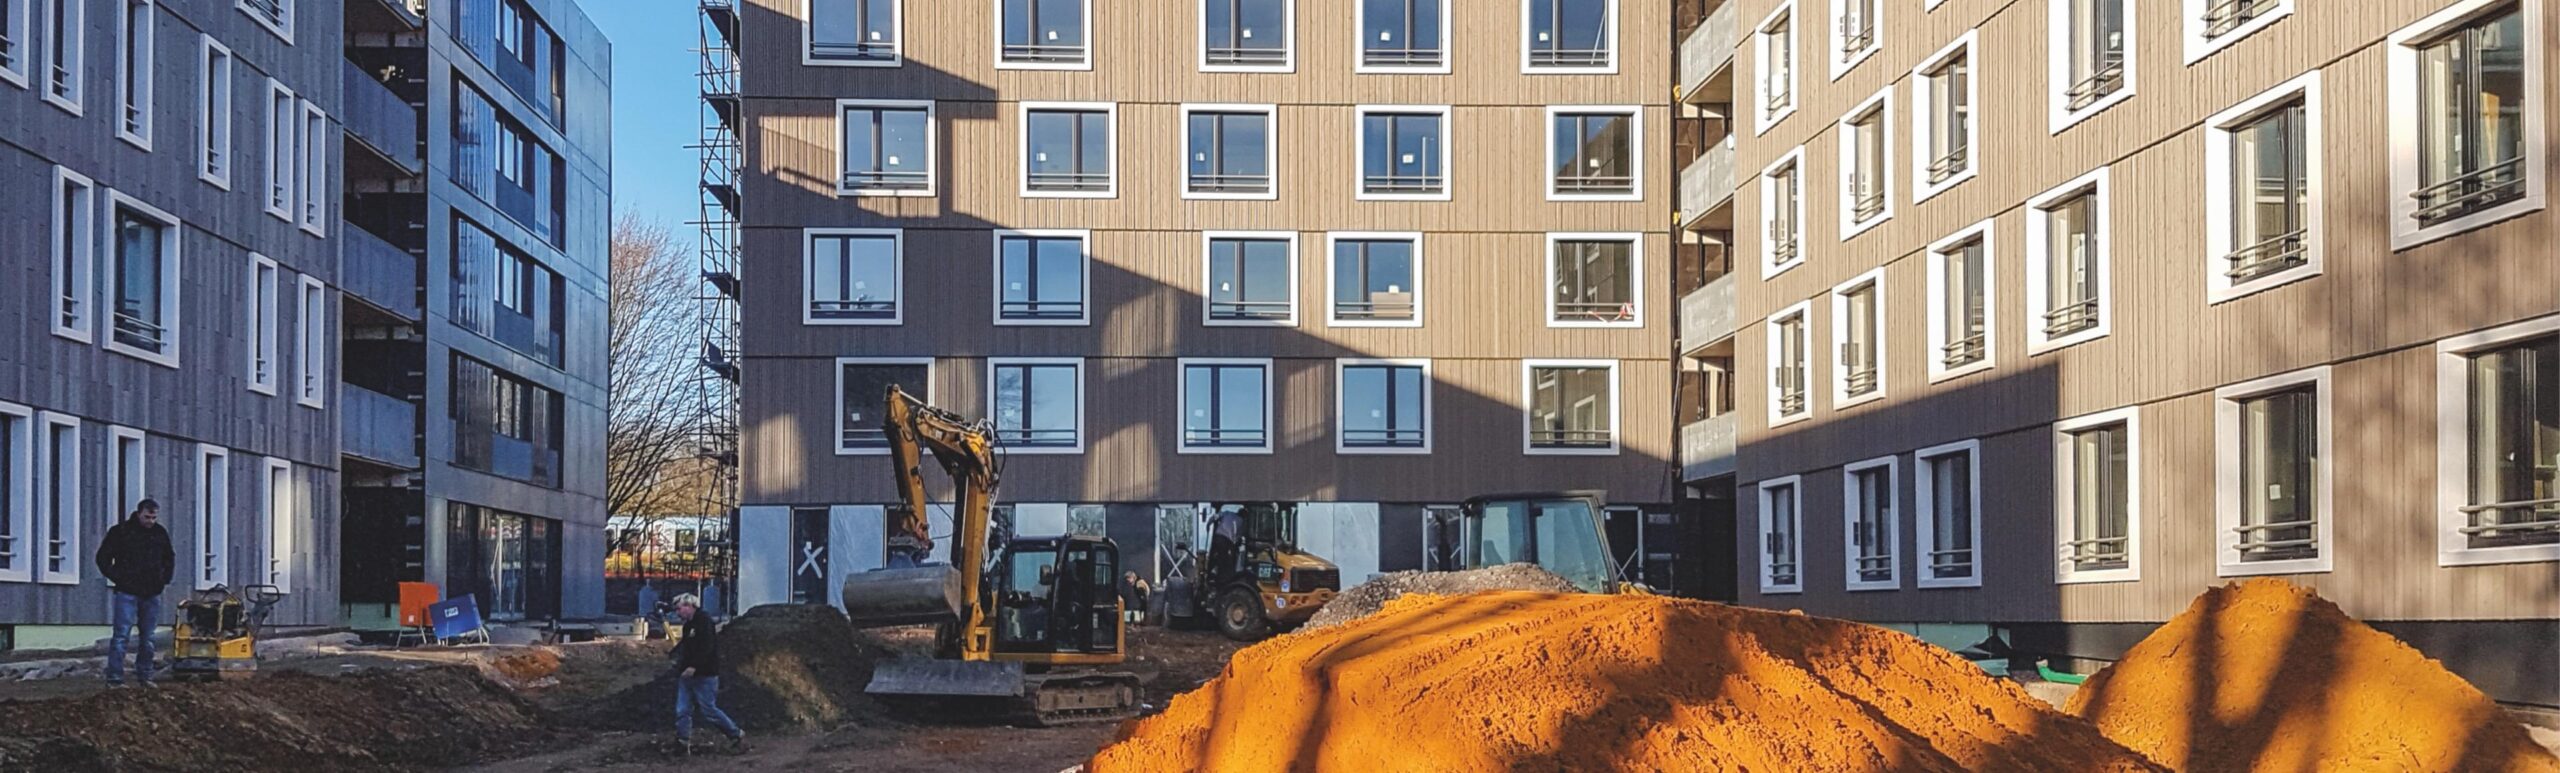 Foto eines Innenhofs in der Laerheidestraße in Bochum, Modellvorhaben Nachhaltiges Bauen